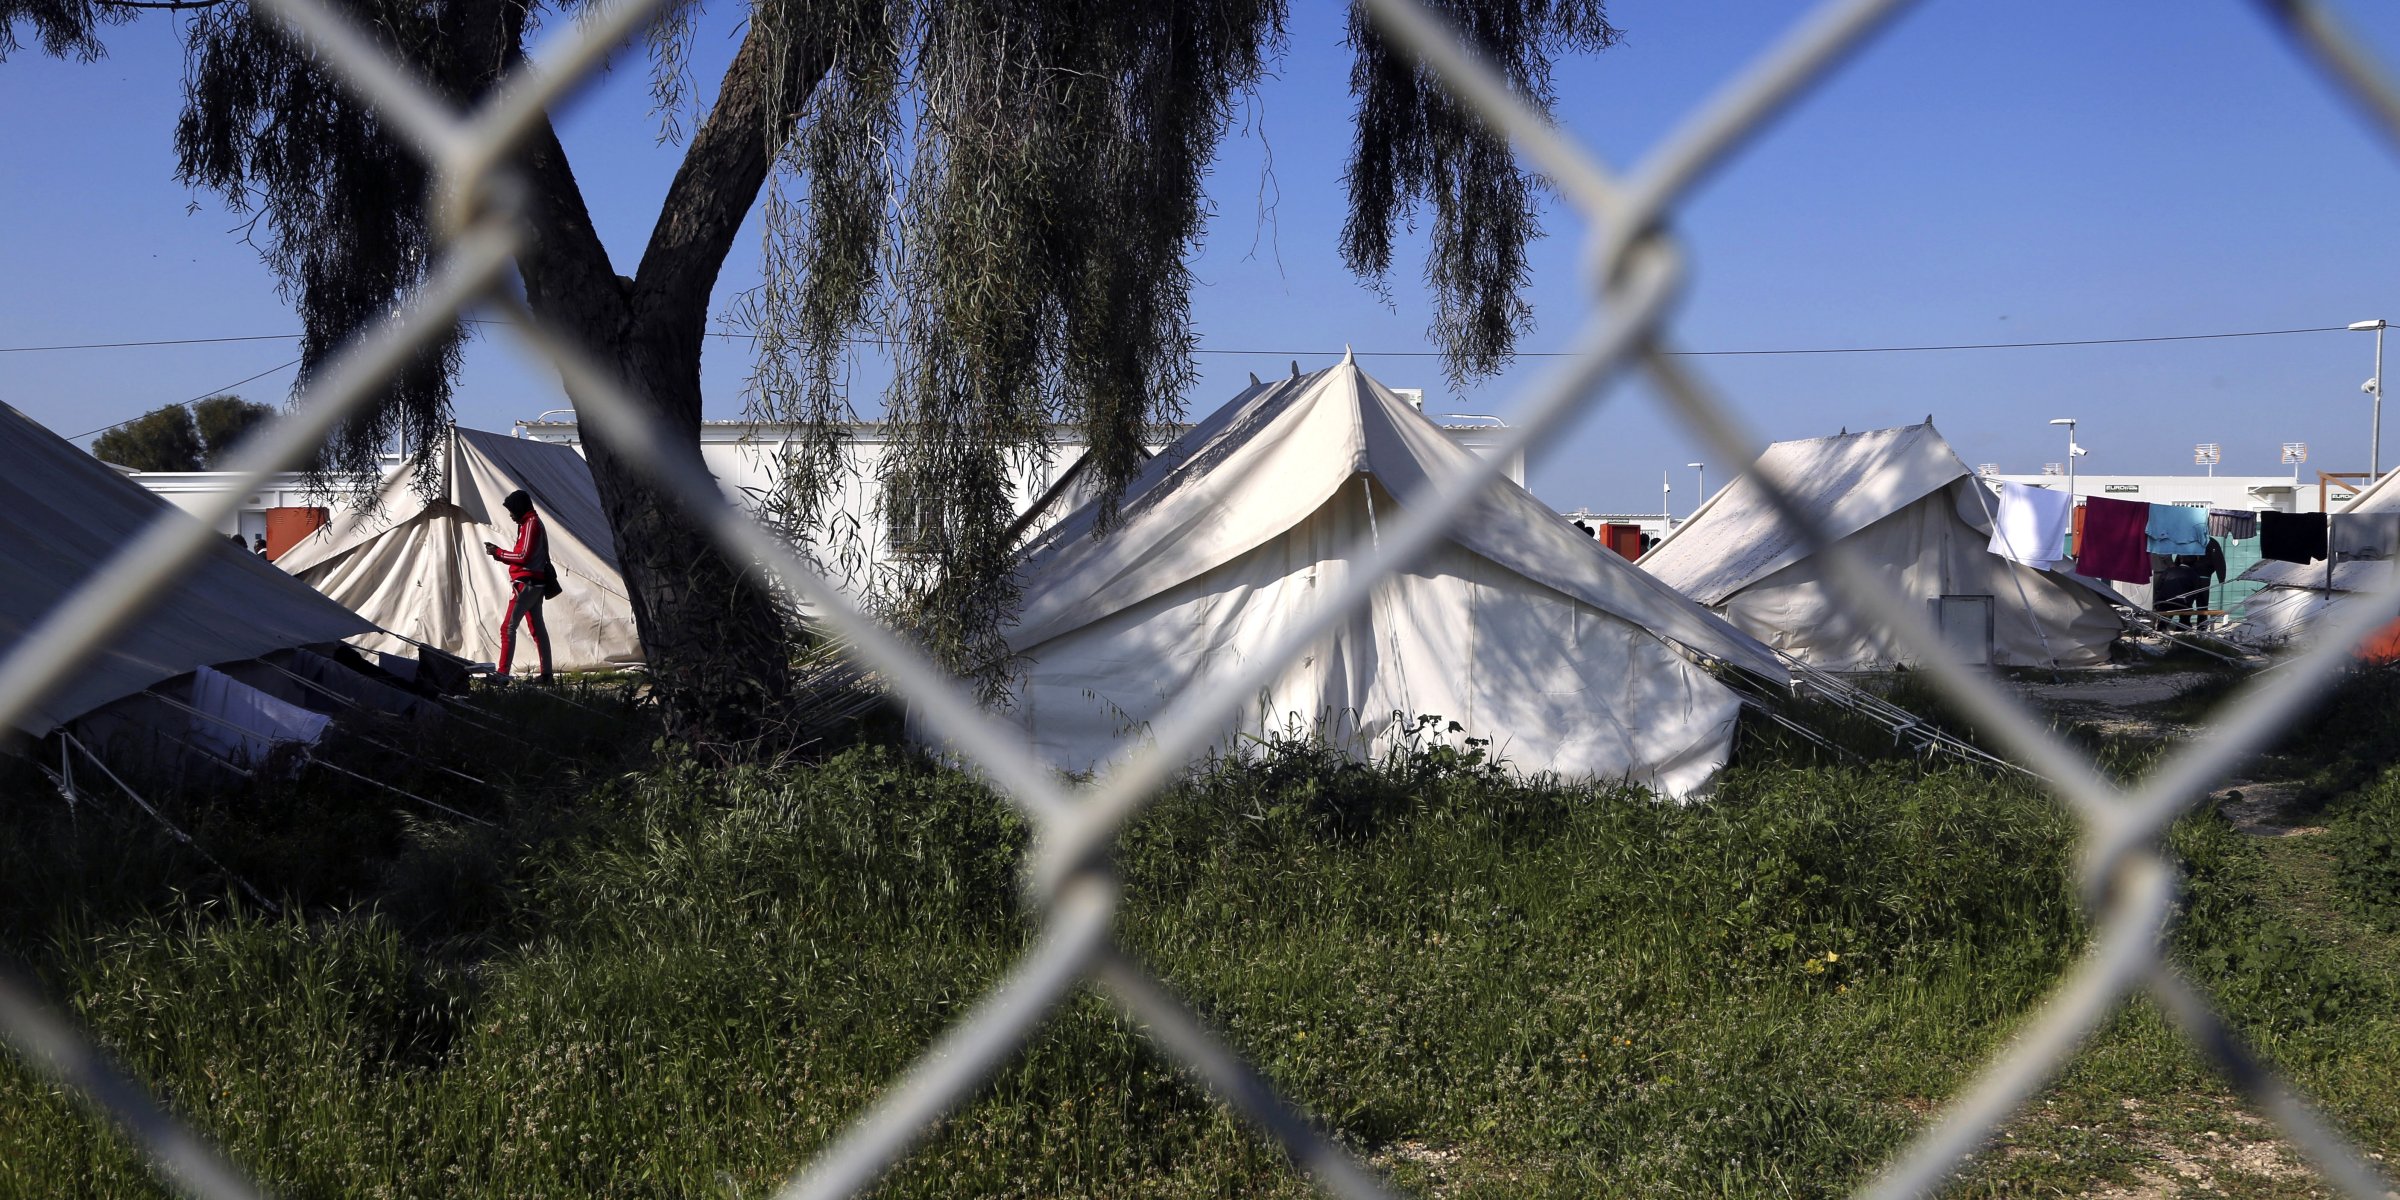 35 μετανάστες τραυματίστηκαν σε μαζική φιλονικία σε στρατόπεδο στην ελληνική Κύπρο